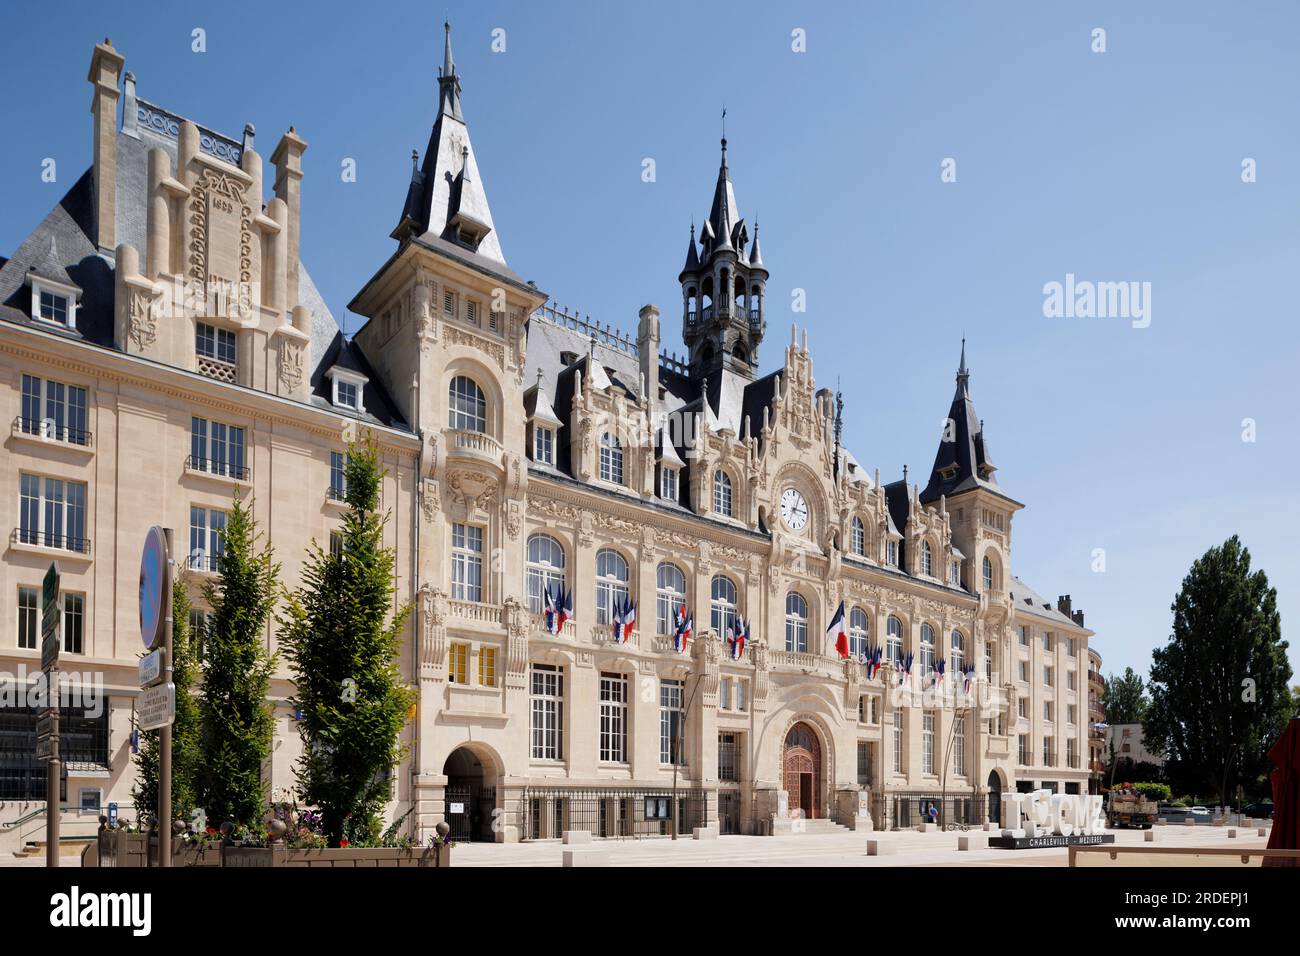 Hotel de ville, Charleville-Mézières Ardennes Grande est France Banque D'Images